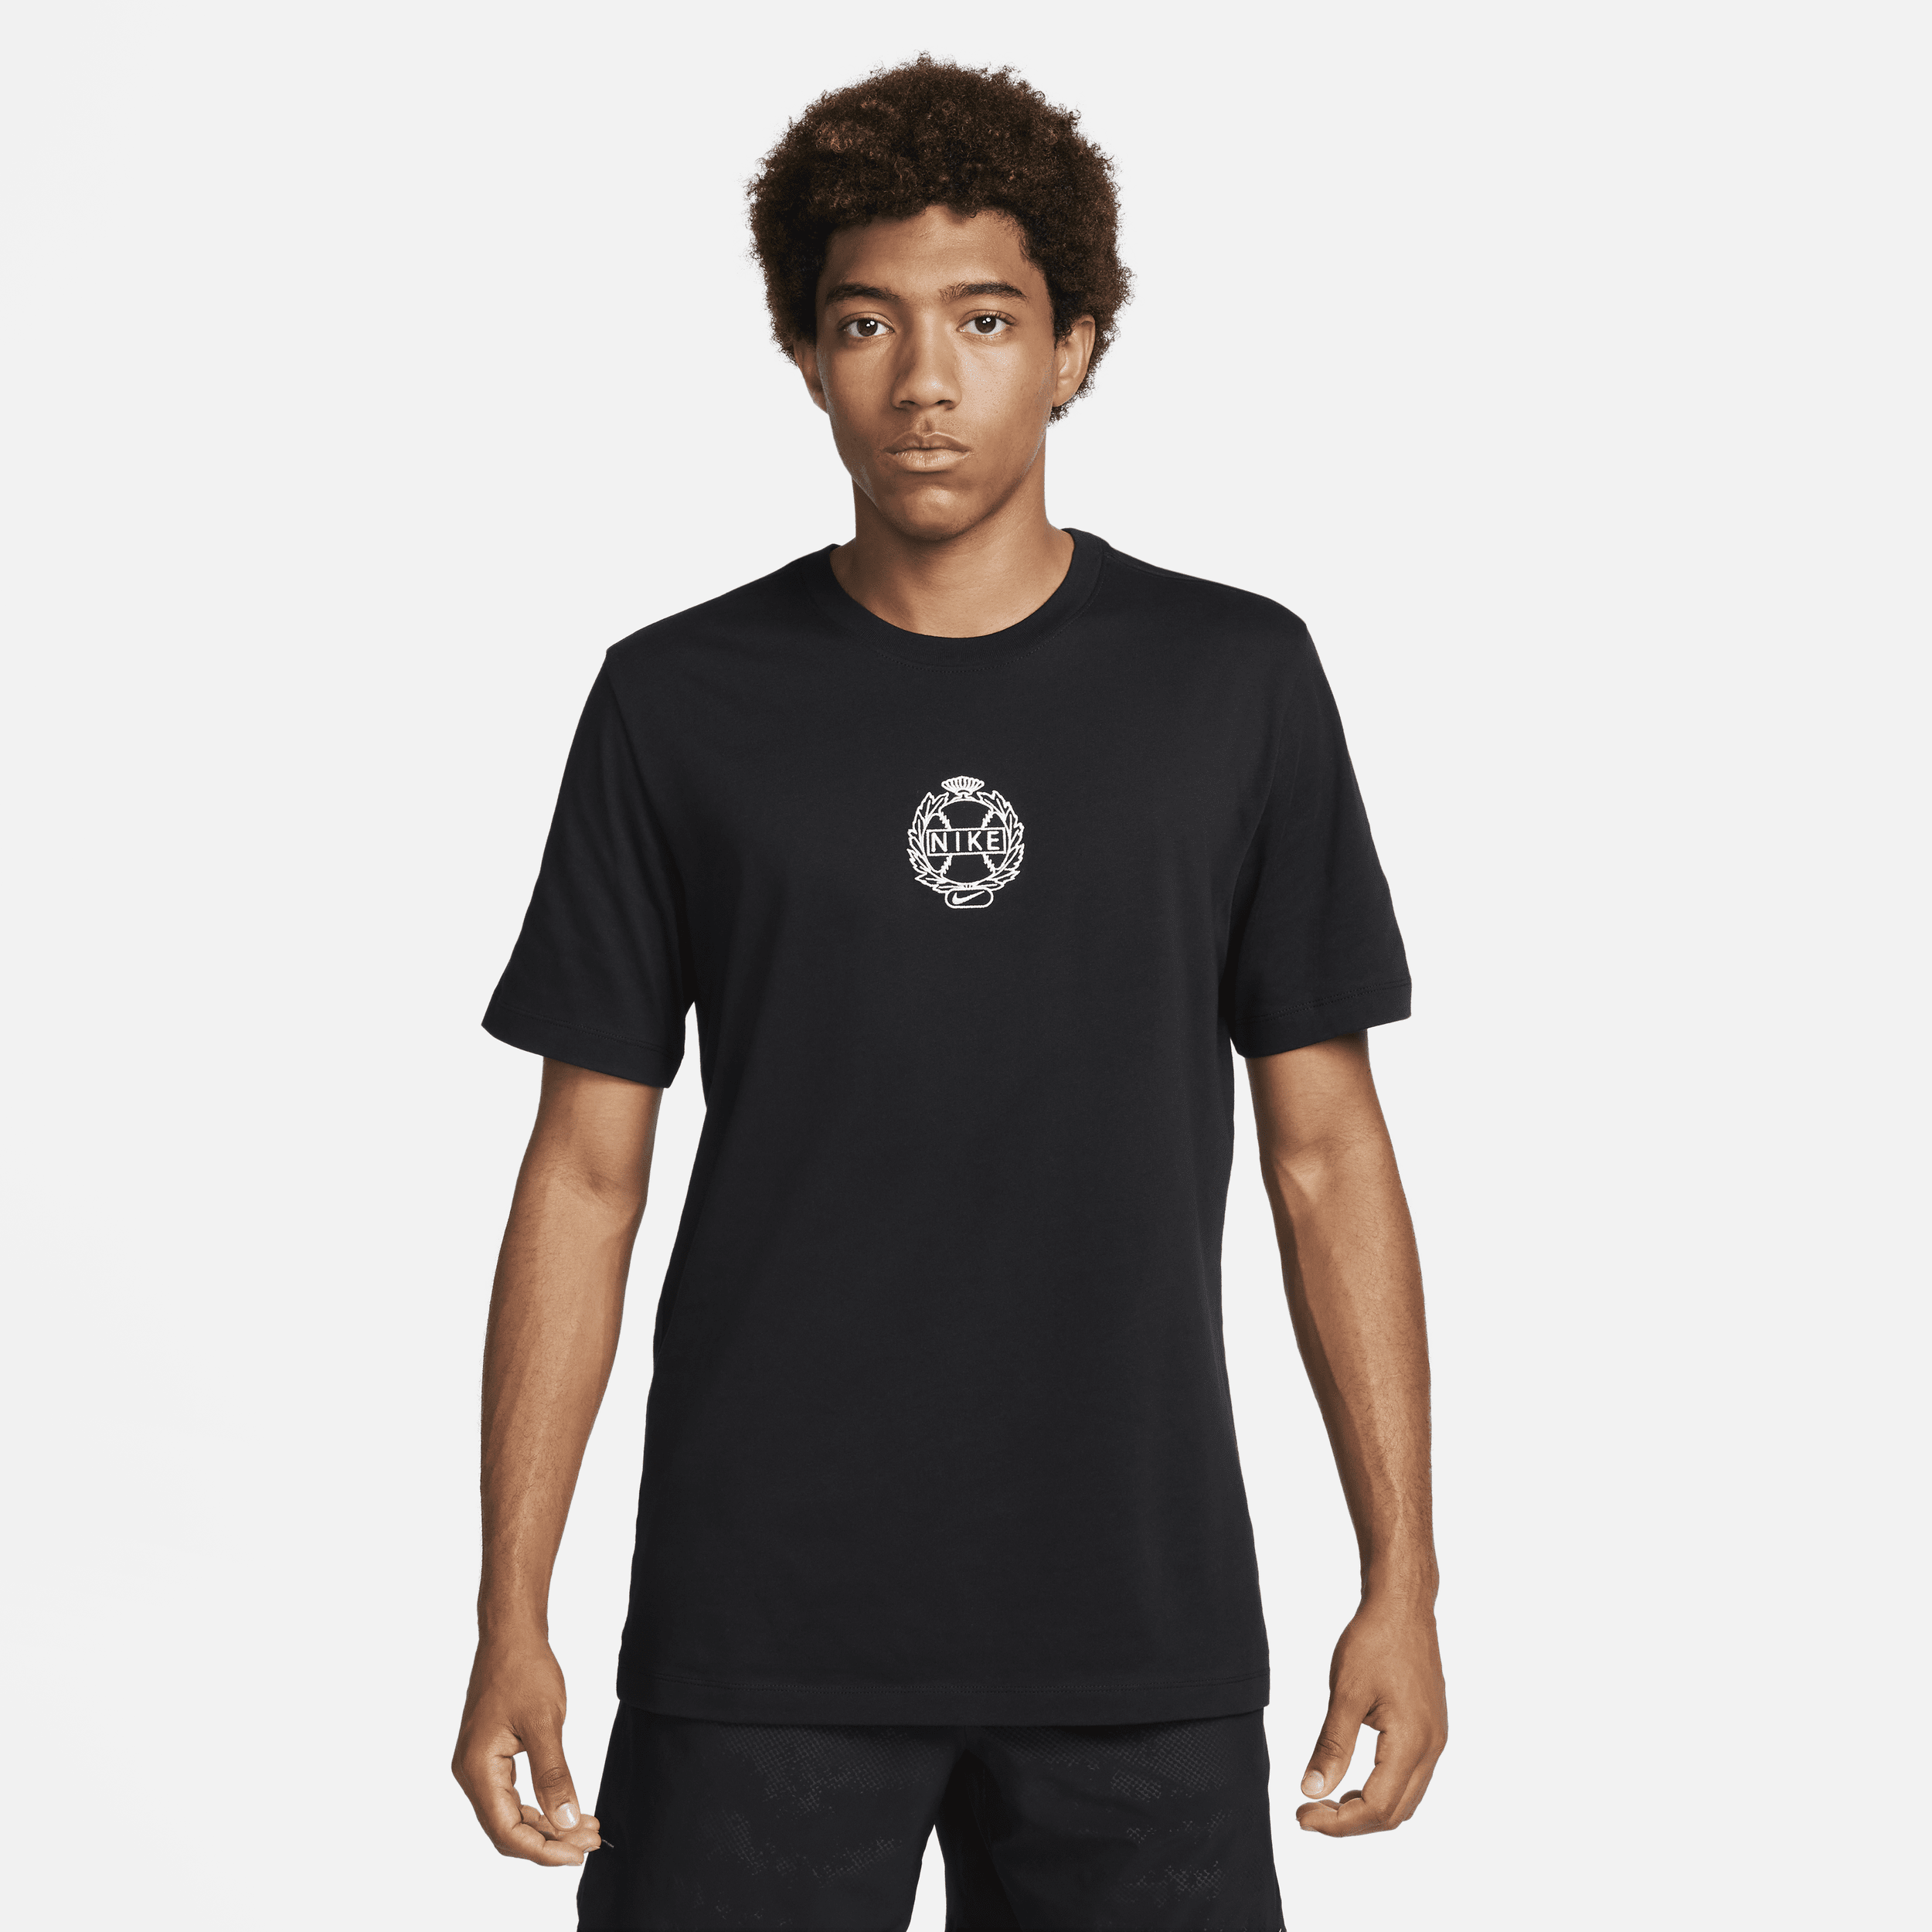 Nike Men's Baseball T-shirt In Black